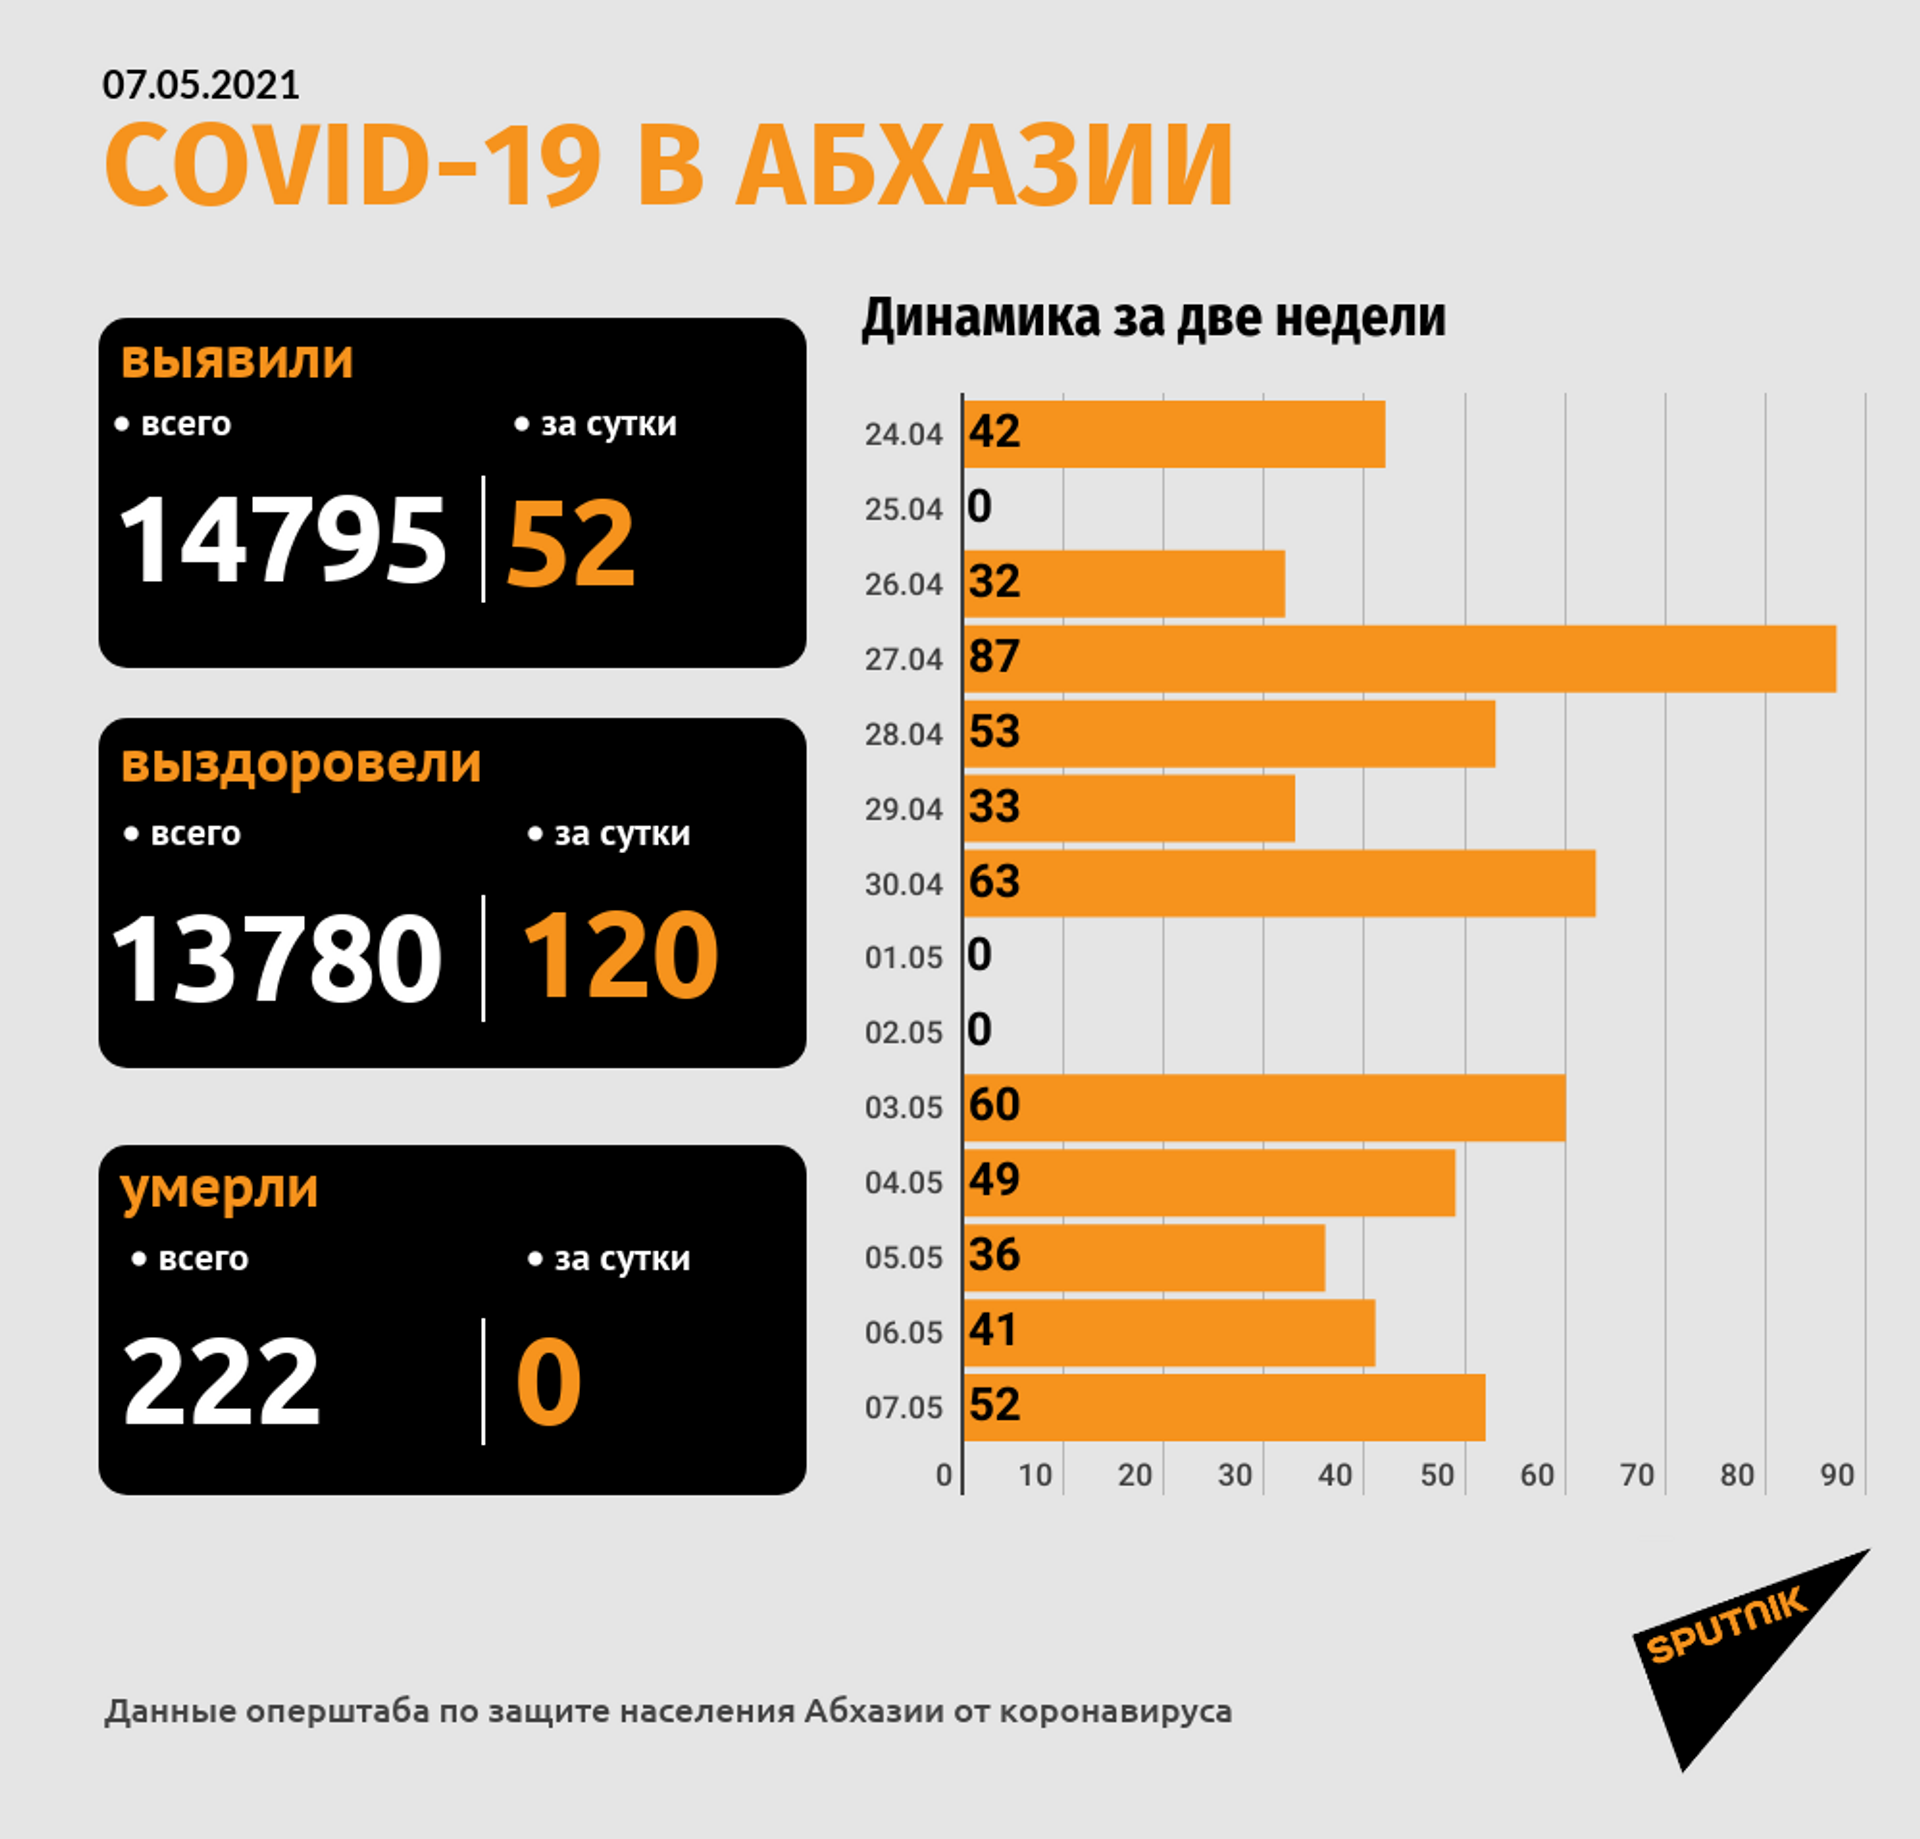 Более 50 случаев коронавируса выявлено в Абхазии за прошедшие сутки - Sputnik Абхазия, 1920, 07.05.2021